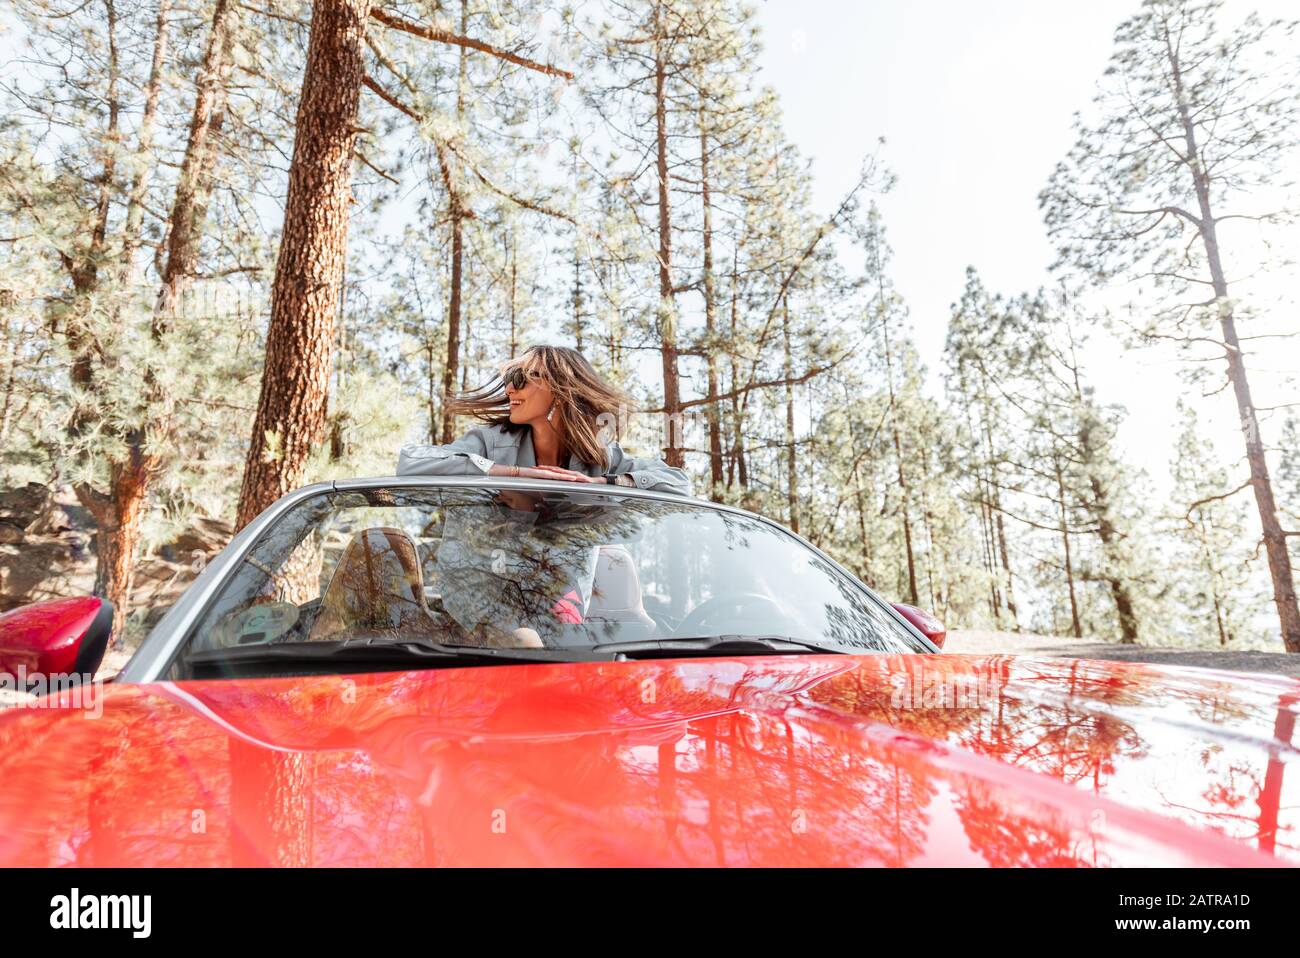 Junge, stilvolle Frau, die mit einem Cabriolet-Auto auf der Natur unterwegs ist, mit Blick aus dem Auto im Wald. Weitblick Stockfoto